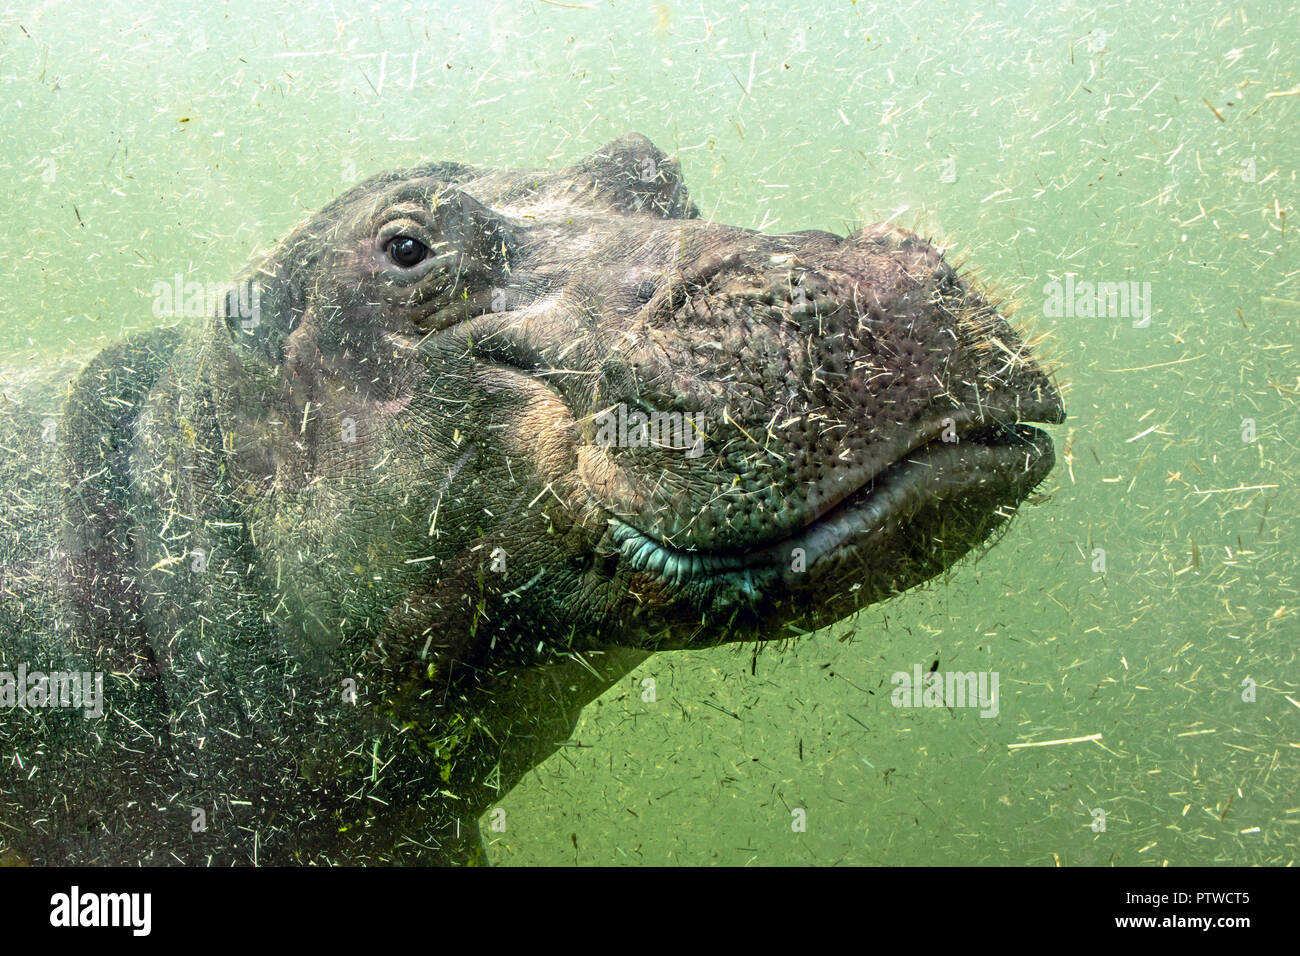 Eine junge Hippo schwimmt unter Wasser. Hippopotamus schwimmt in schmutzigen grünen Wasser. Stockfoto